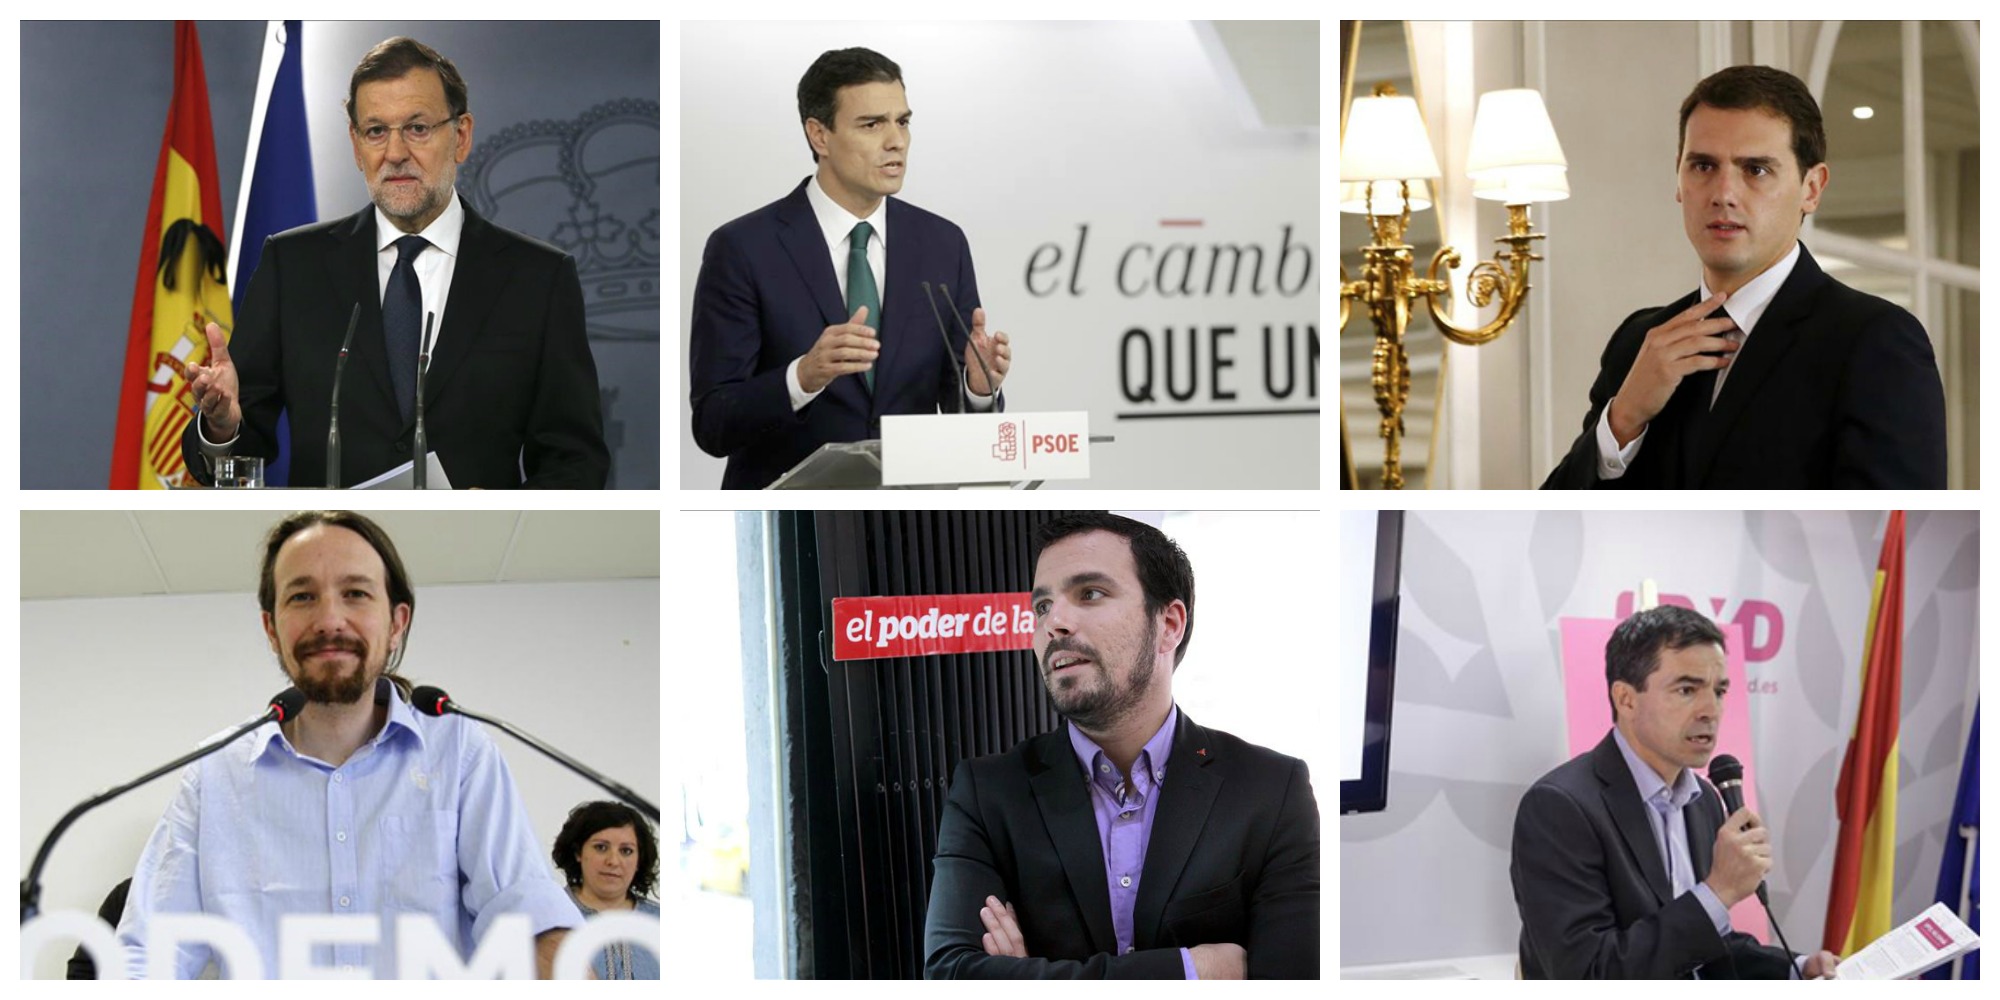 Mariano Rajoy, Pedro Sánchez, Albert Rivera, Pablo Iglesias, Alberto Garzón y Andrés Herzog